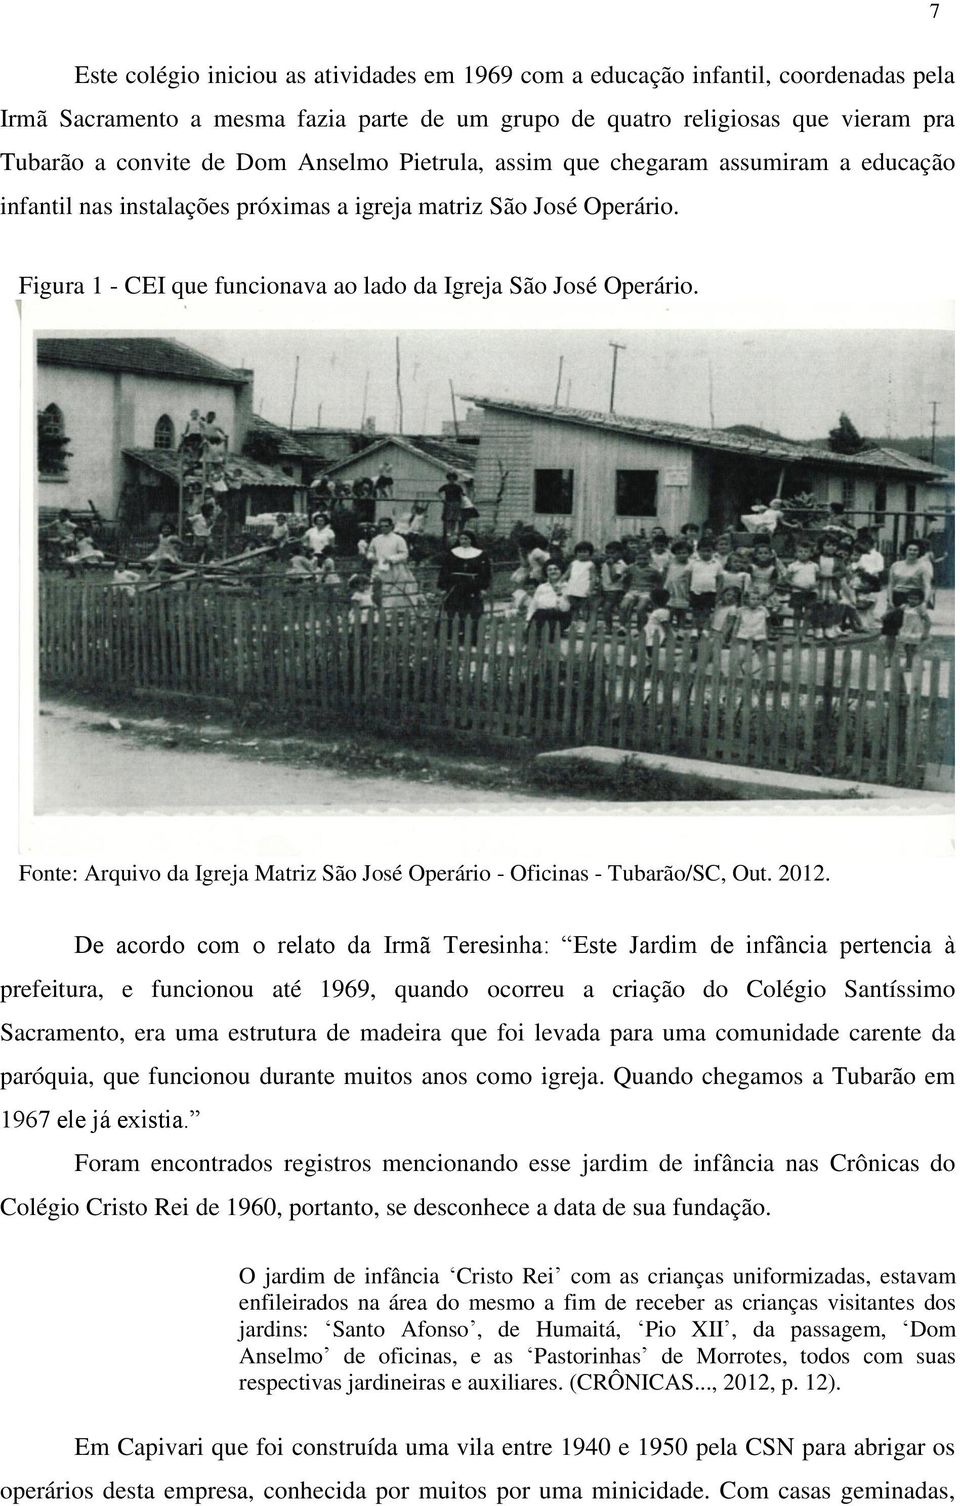 Fonte: Arquivo da Igreja Matriz São José Operário - Oficinas - Tubarão/SC, Out. 2012.